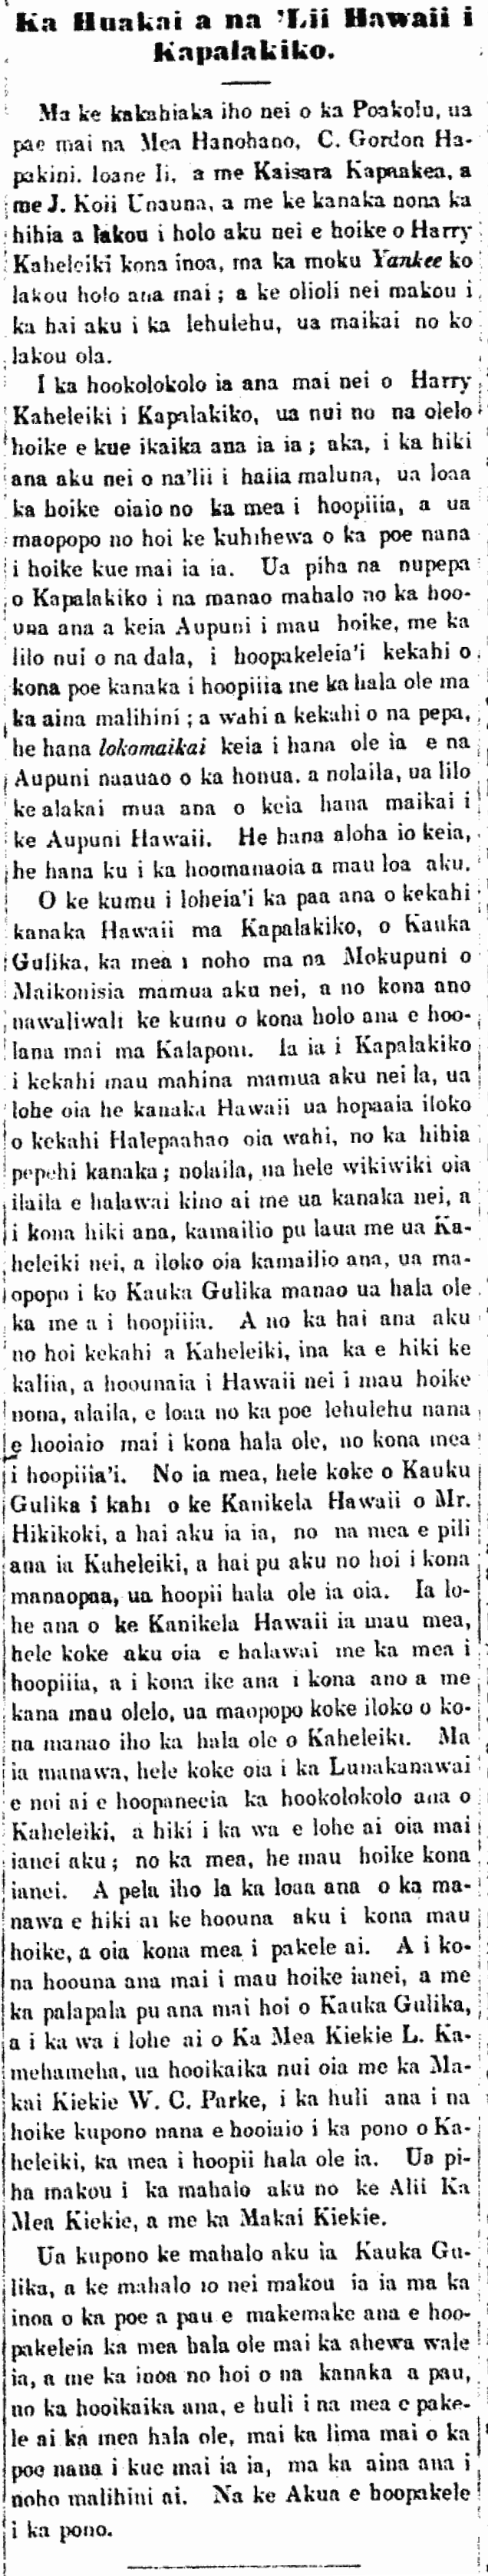 Ka Huakai a na 'Lii Hawaii i Kapalakiko.